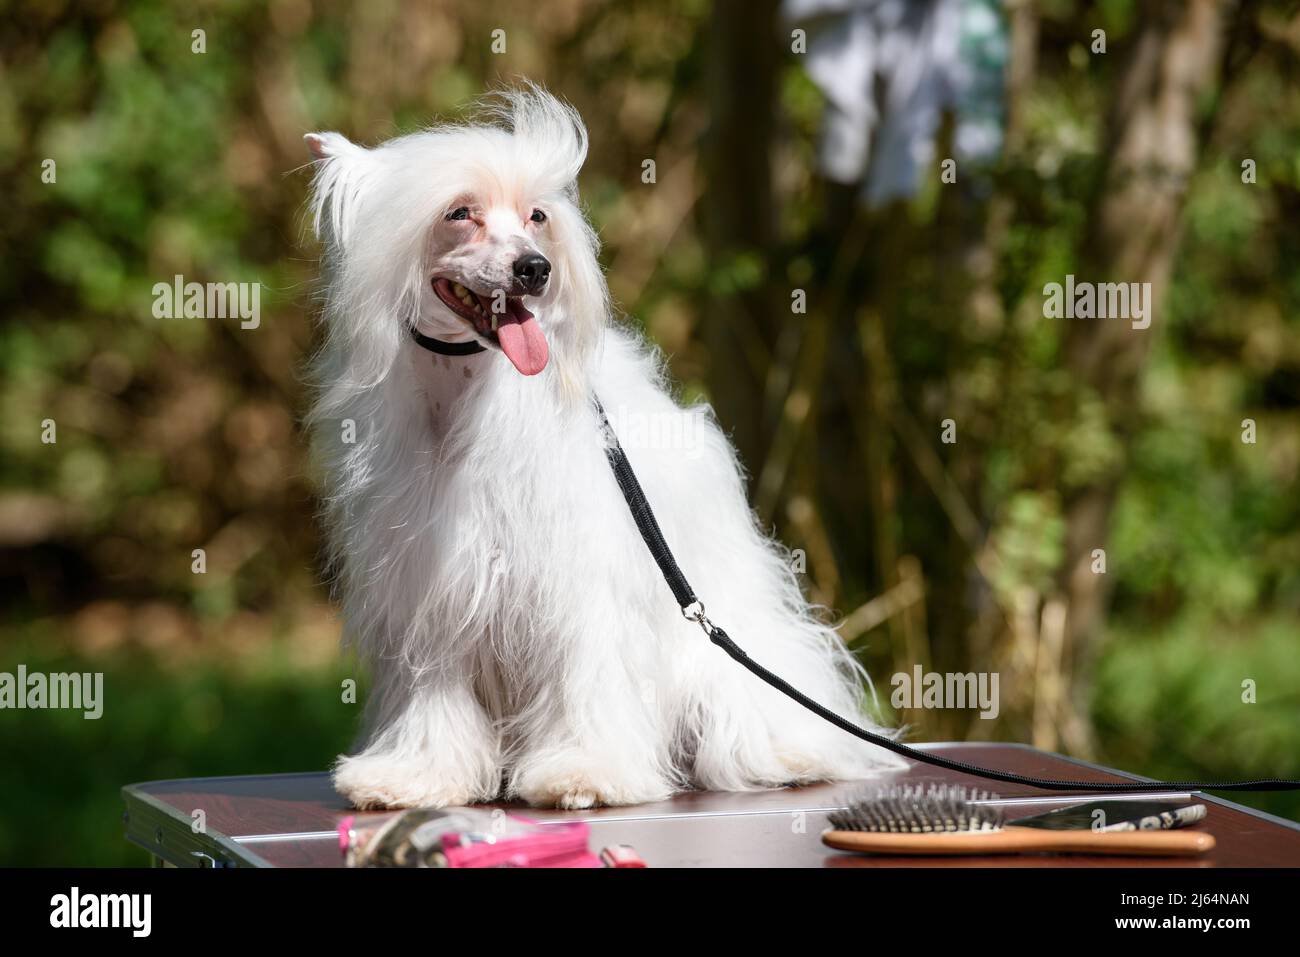 Un chien chinois blanc à crête est assis sur une table debout à l'extérieur, sur fond d'arbres, et regarde à gauche. Banque D'Images